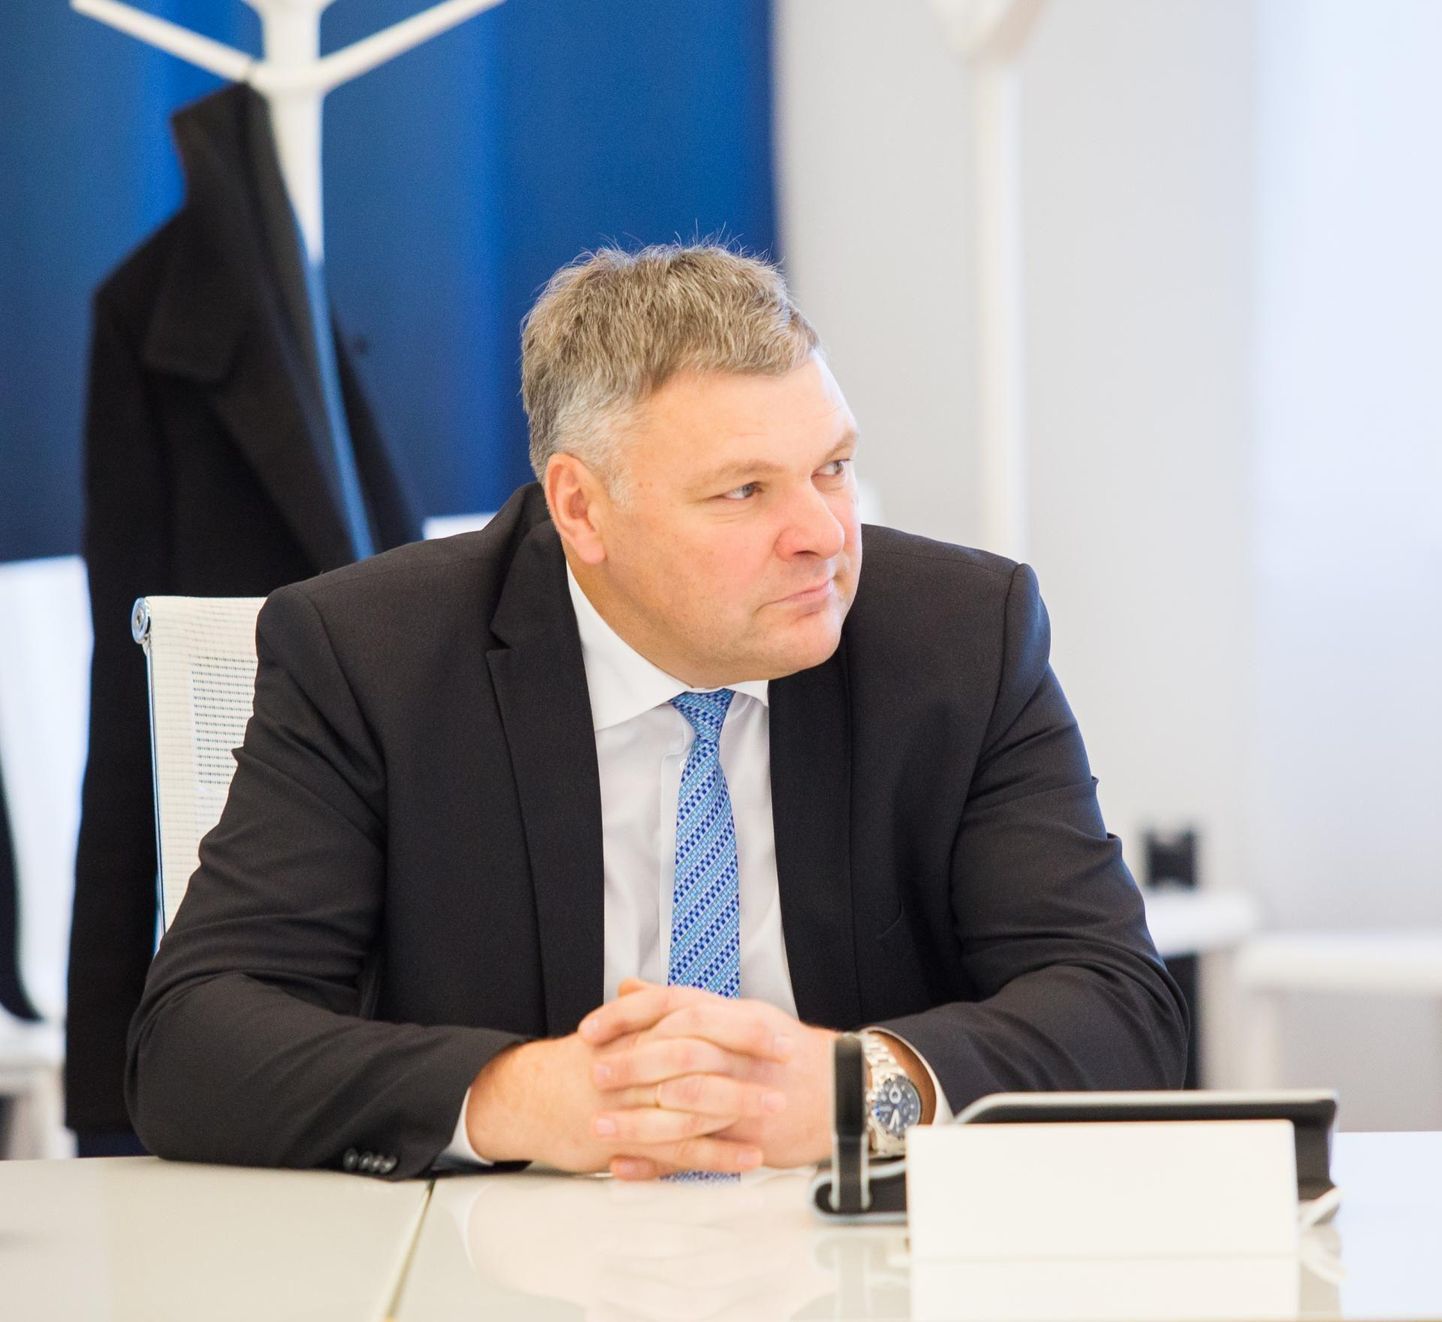 Marko Pomerants works for PR agency Powerhouse that is lobbying for Huawei in Estonia.